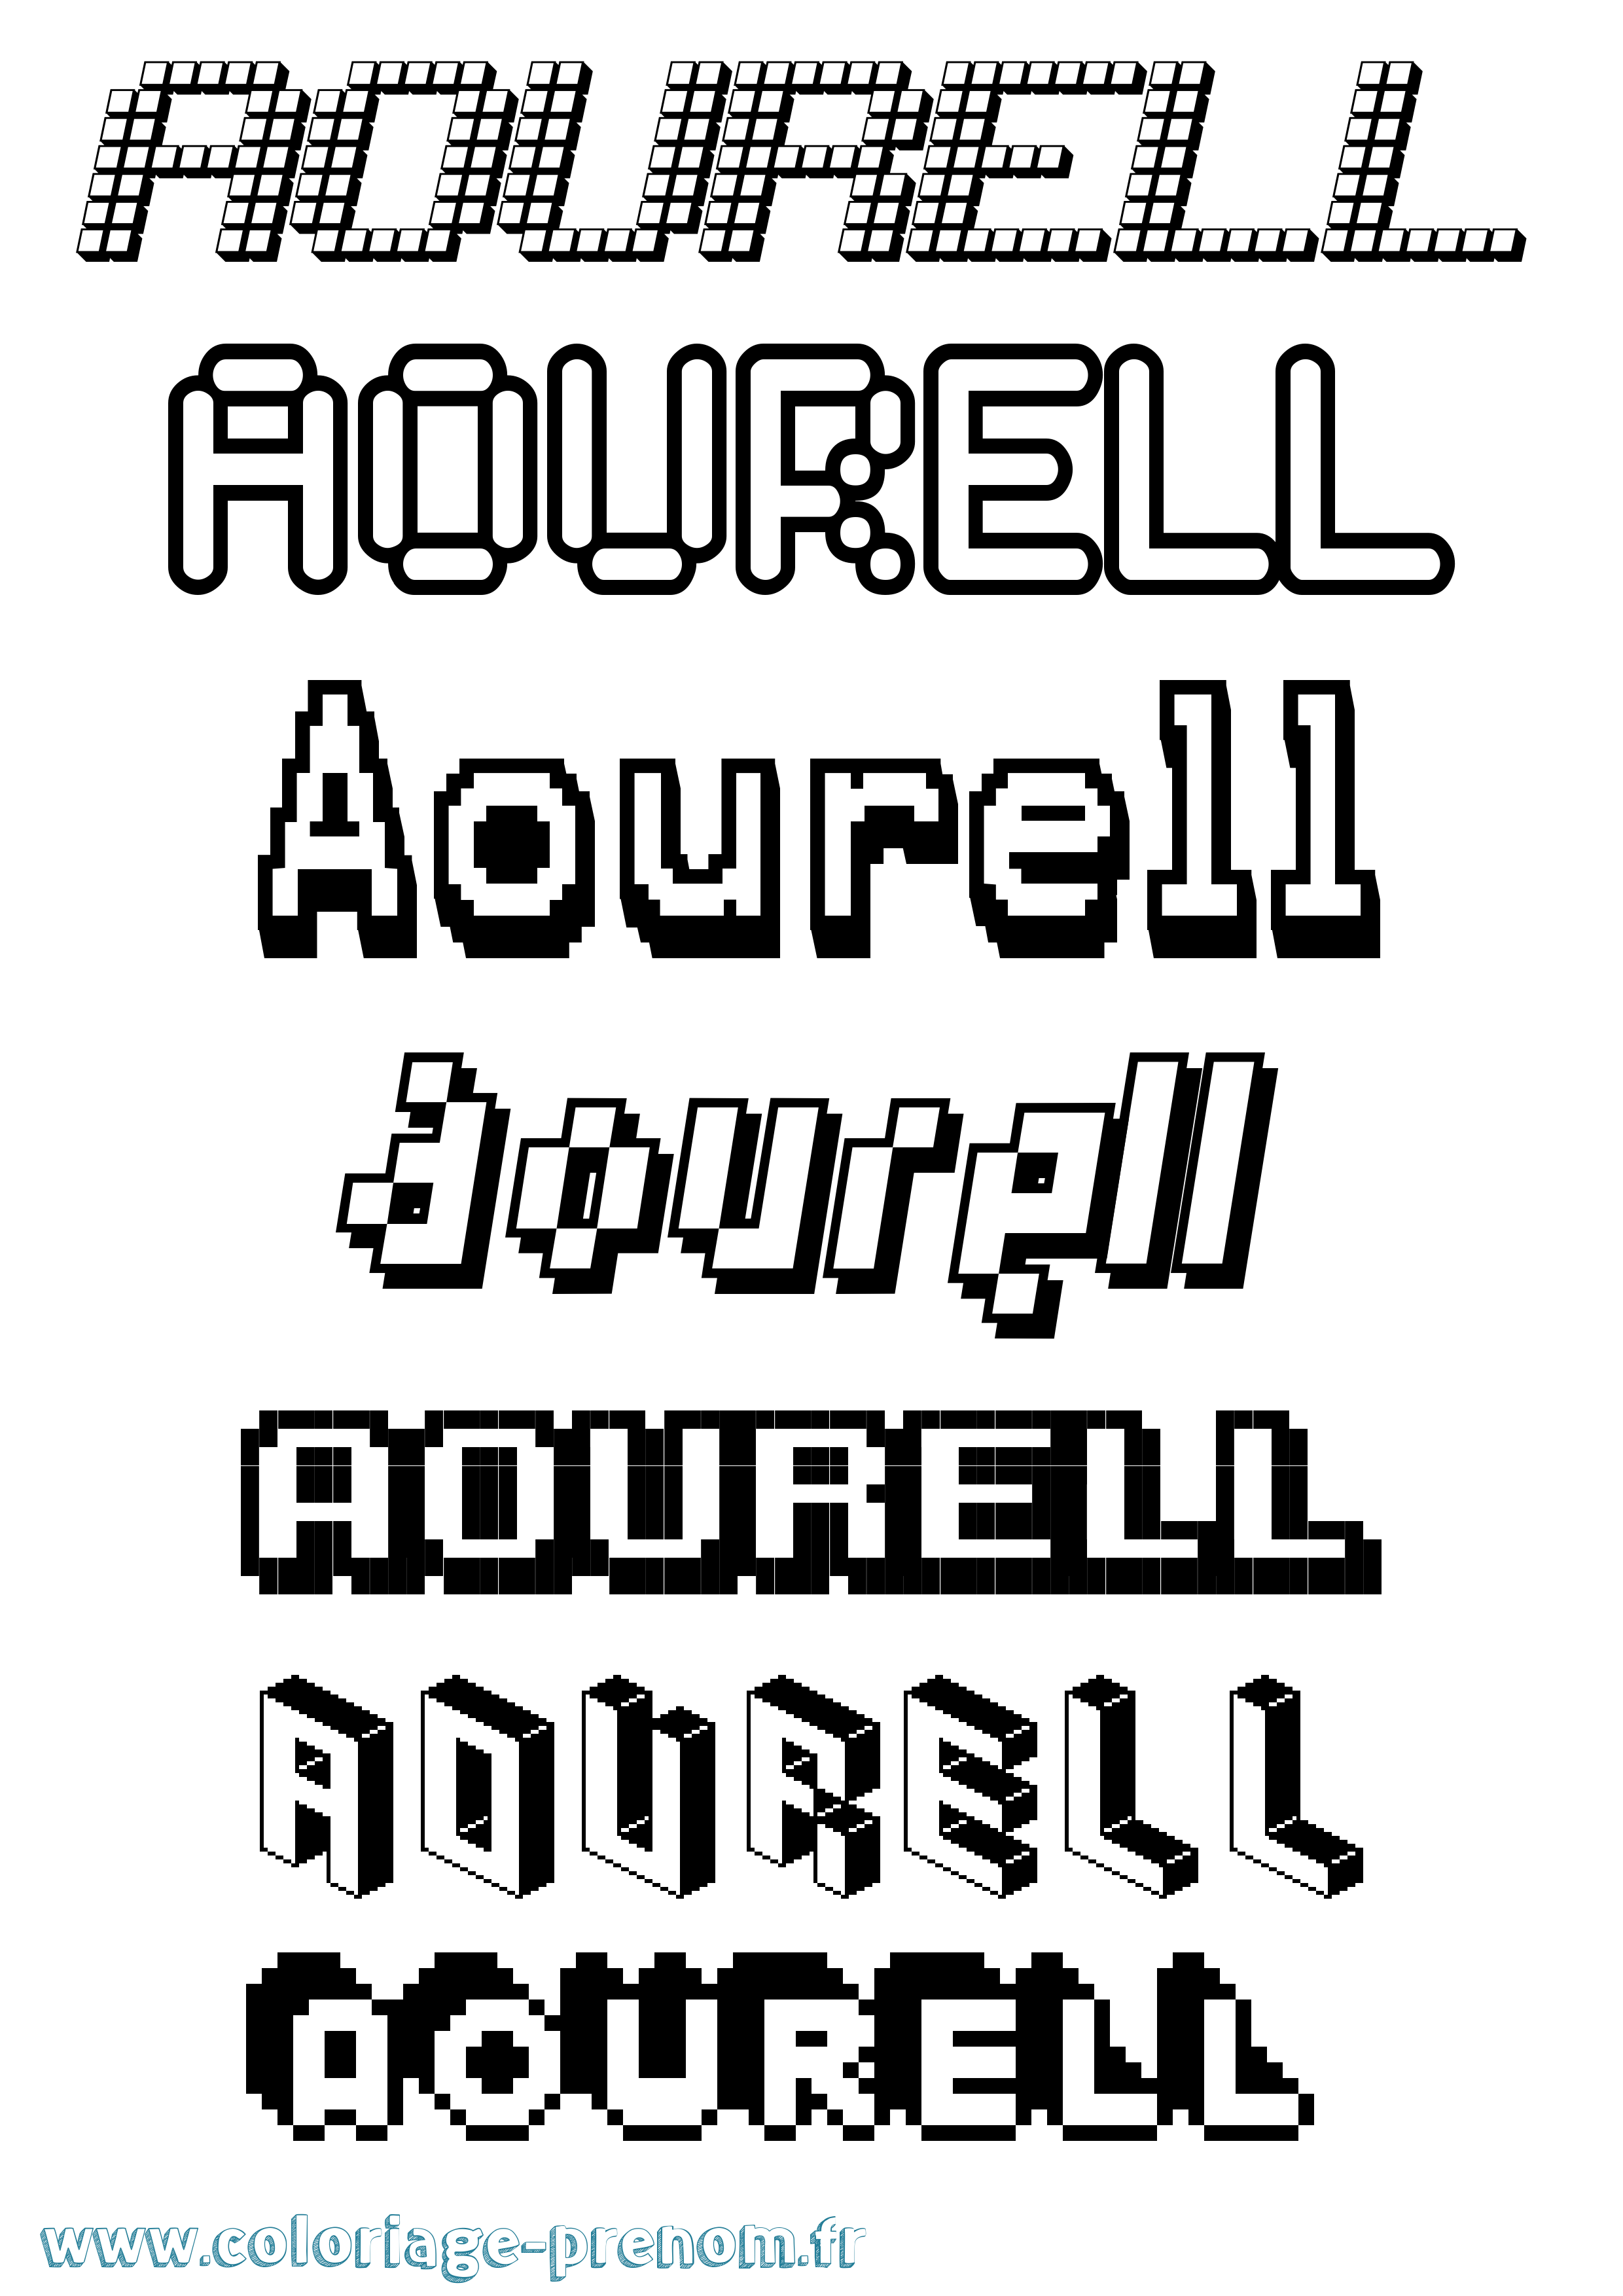 Coloriage prénom Aourell Pixel